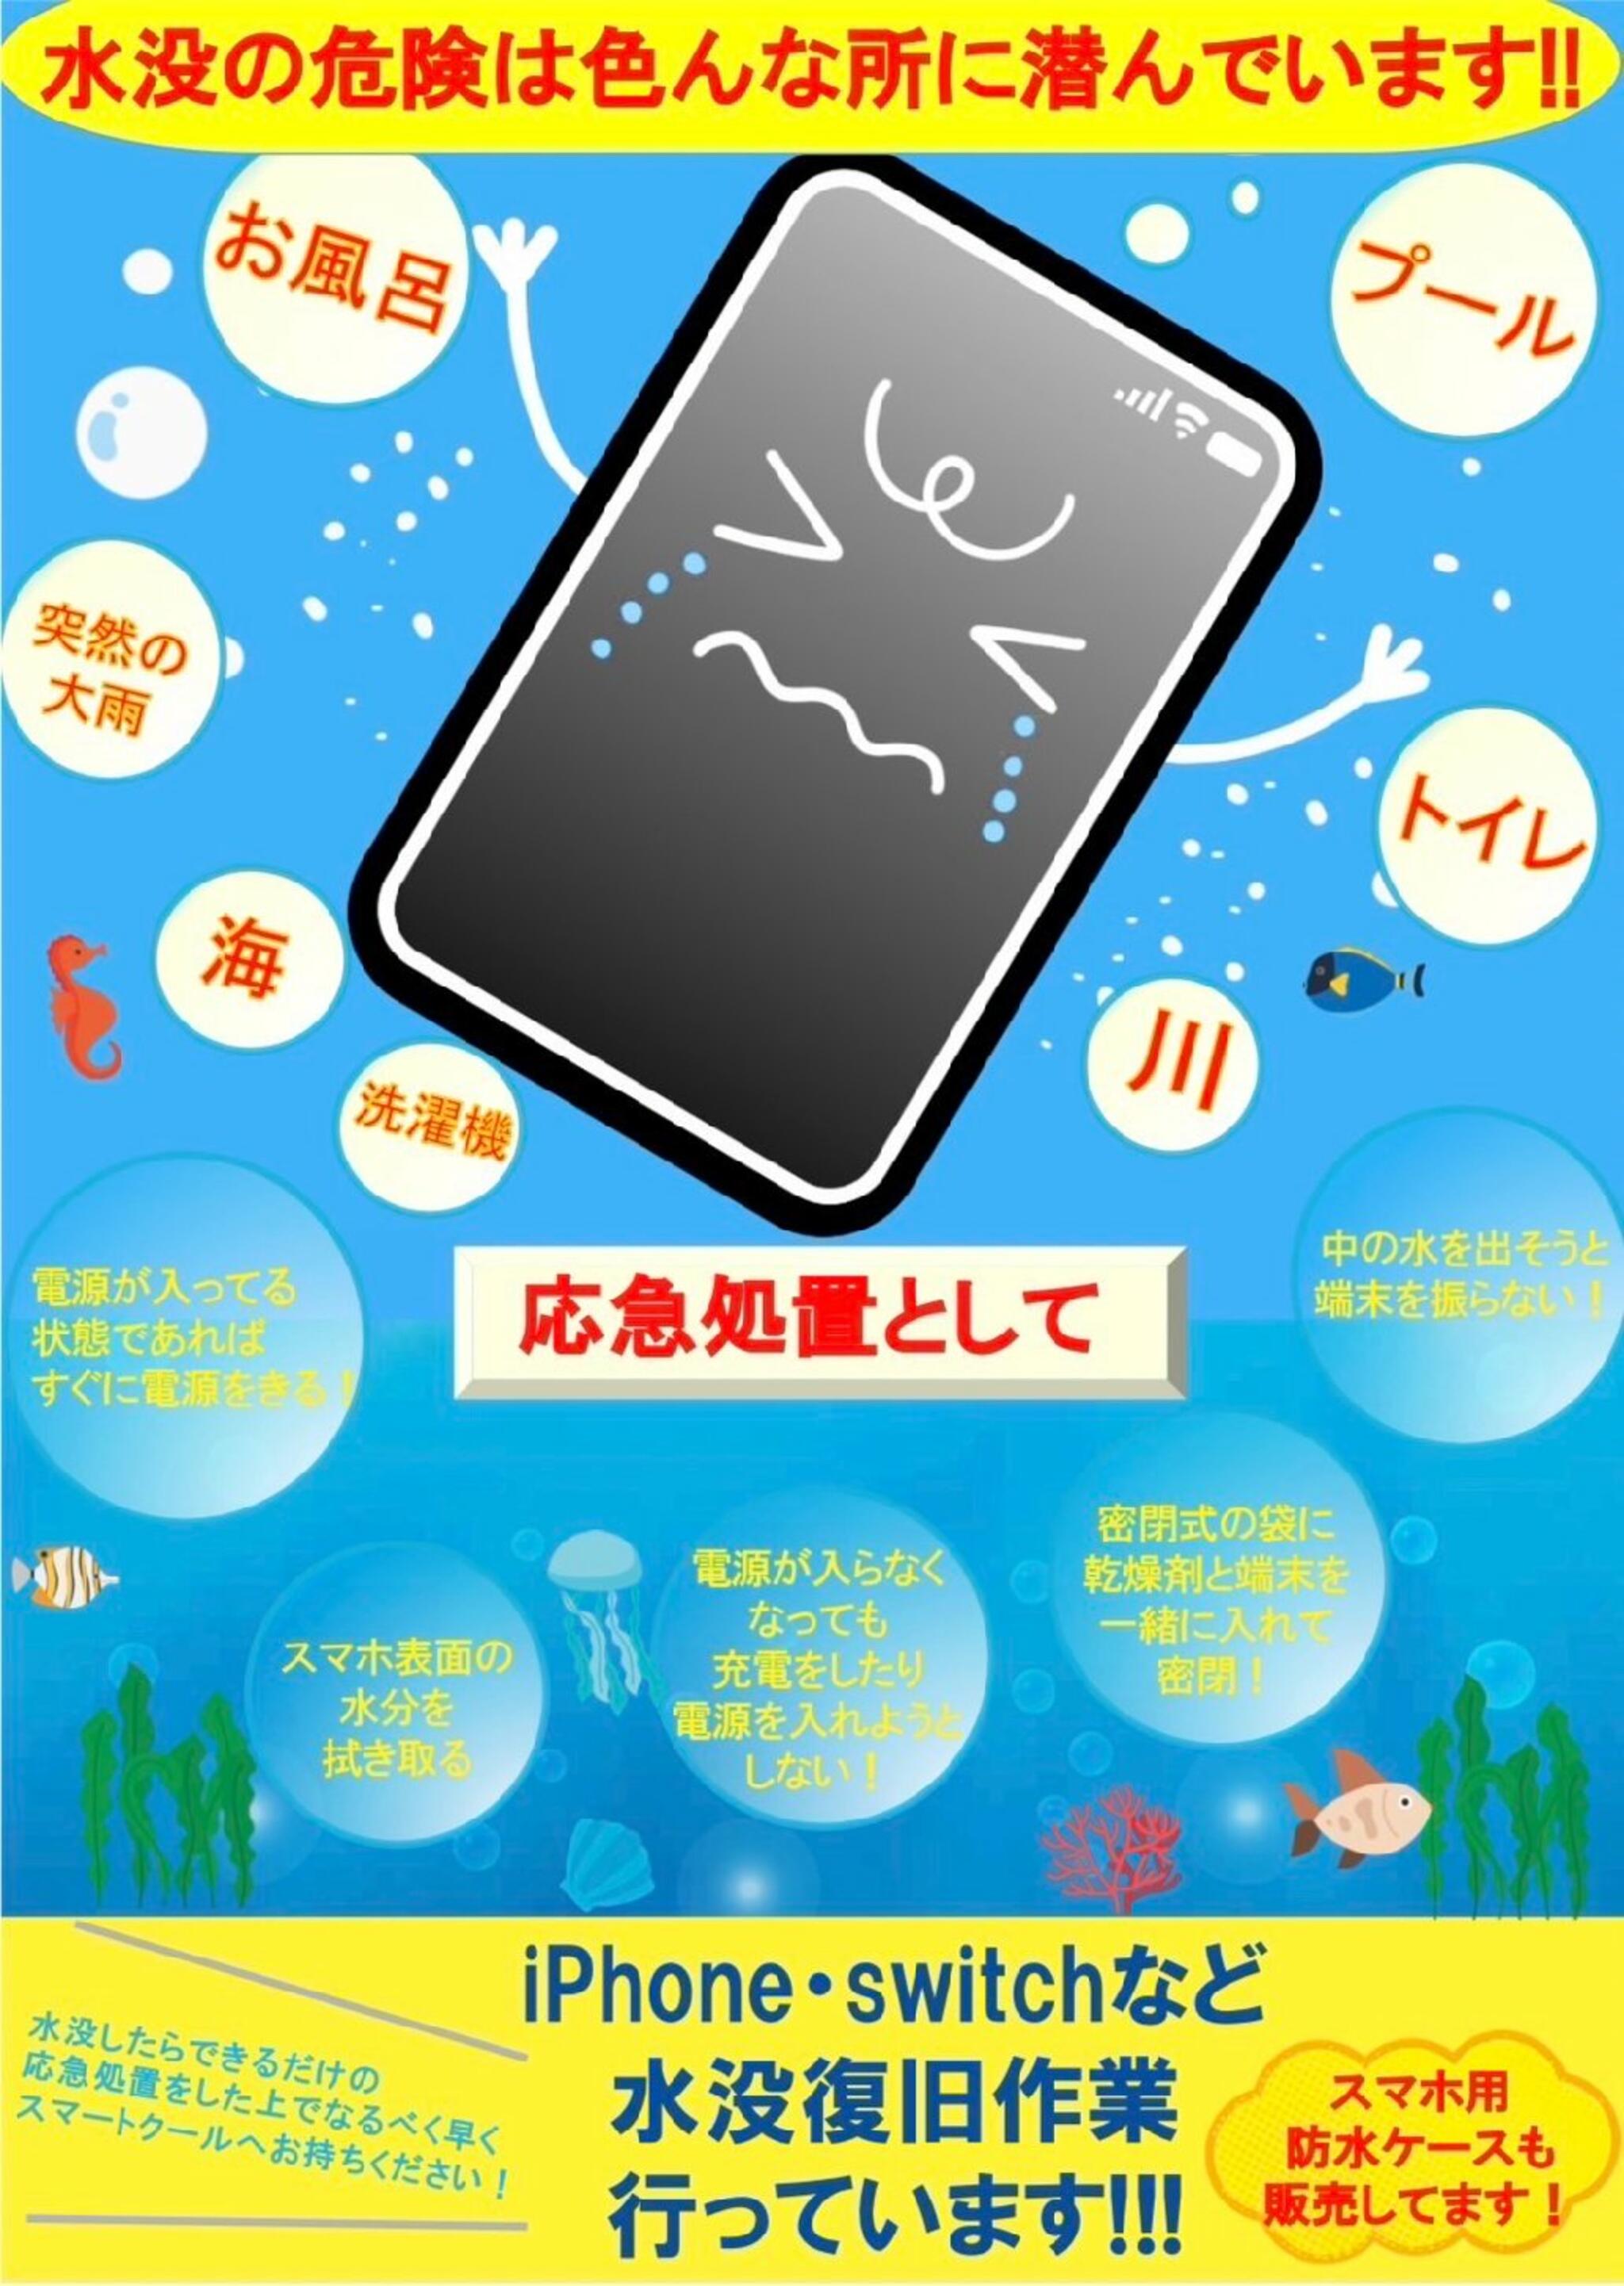 iPhone・iPad・Switch修理店 スマートクール イオンモール広島祇園店からのお知らせ(8月 は終わりそうでも、水没の被害には気をつけましょう！)に関する写真